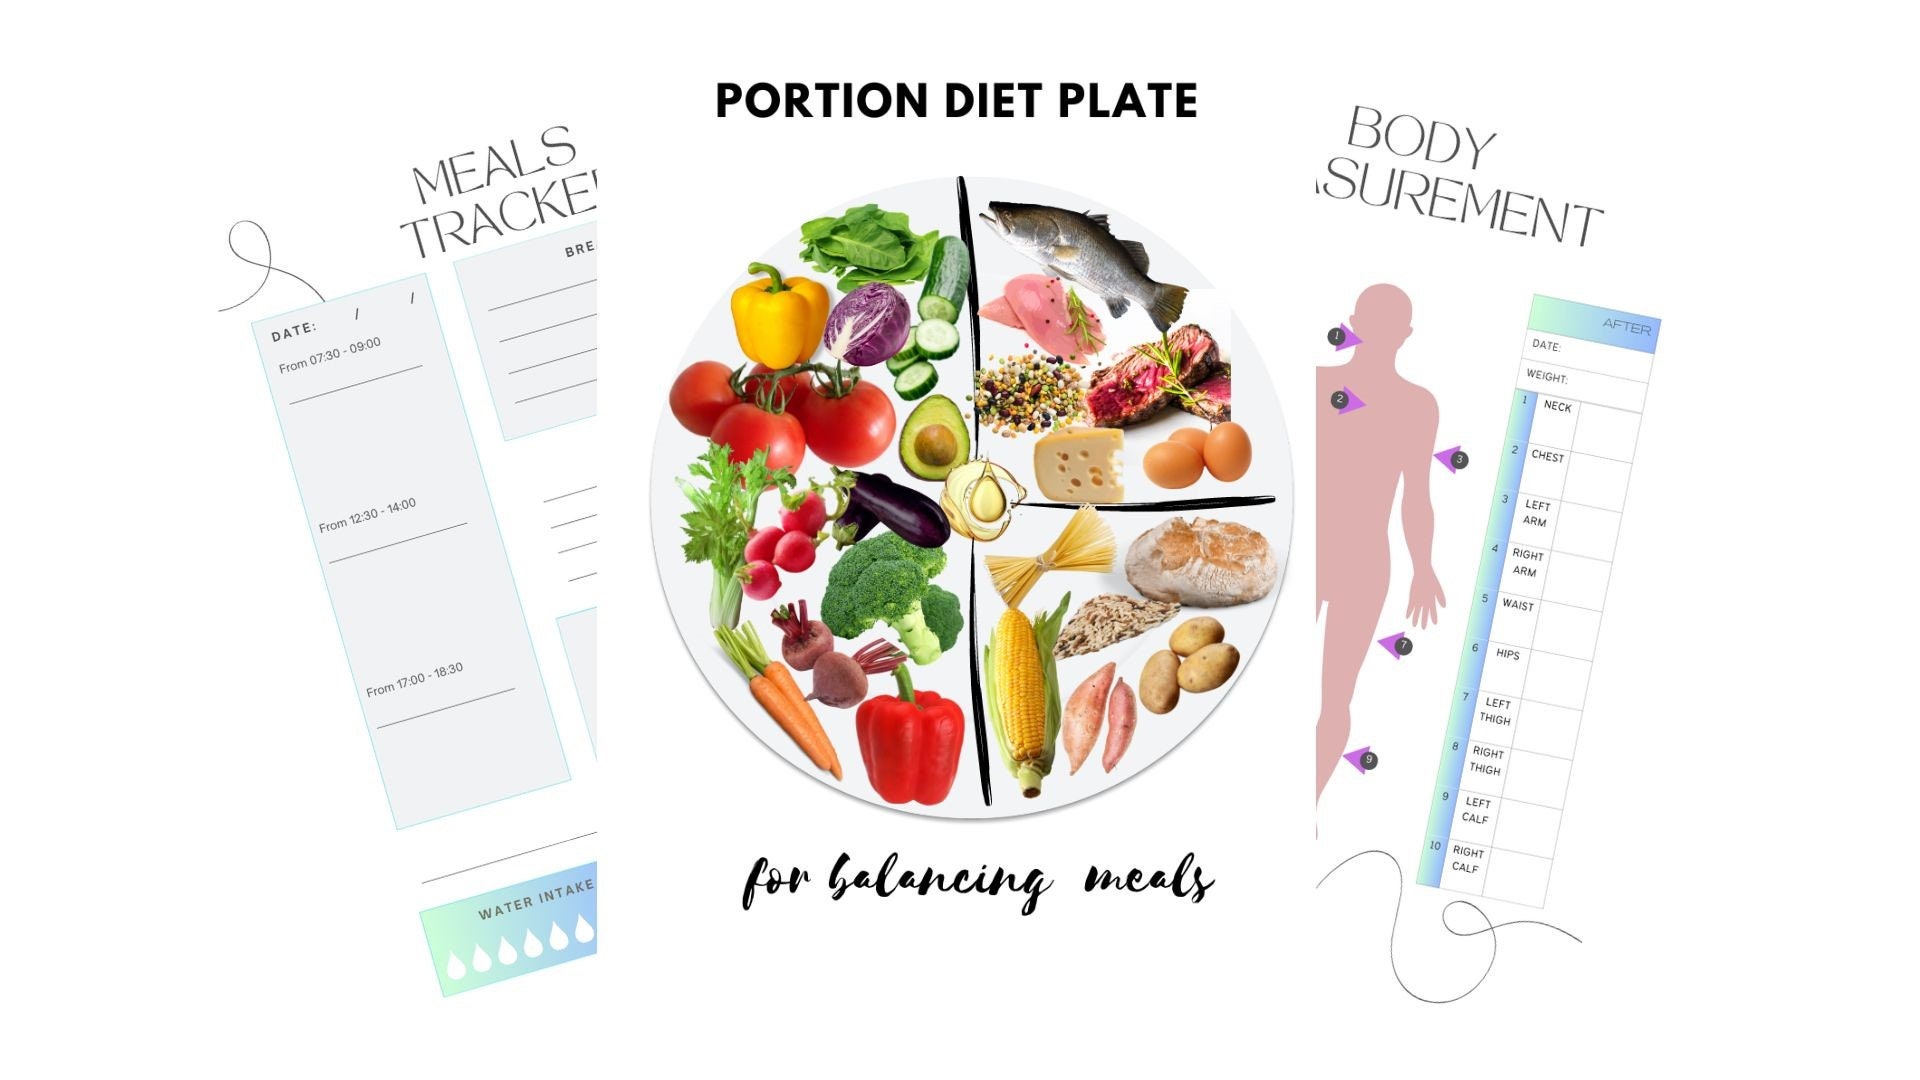 Assiette de contrôle des portions pour diabétiques - Assiettes divisées en  mélamine pour adultes avec protéines, glucides et légumes - Assiette de